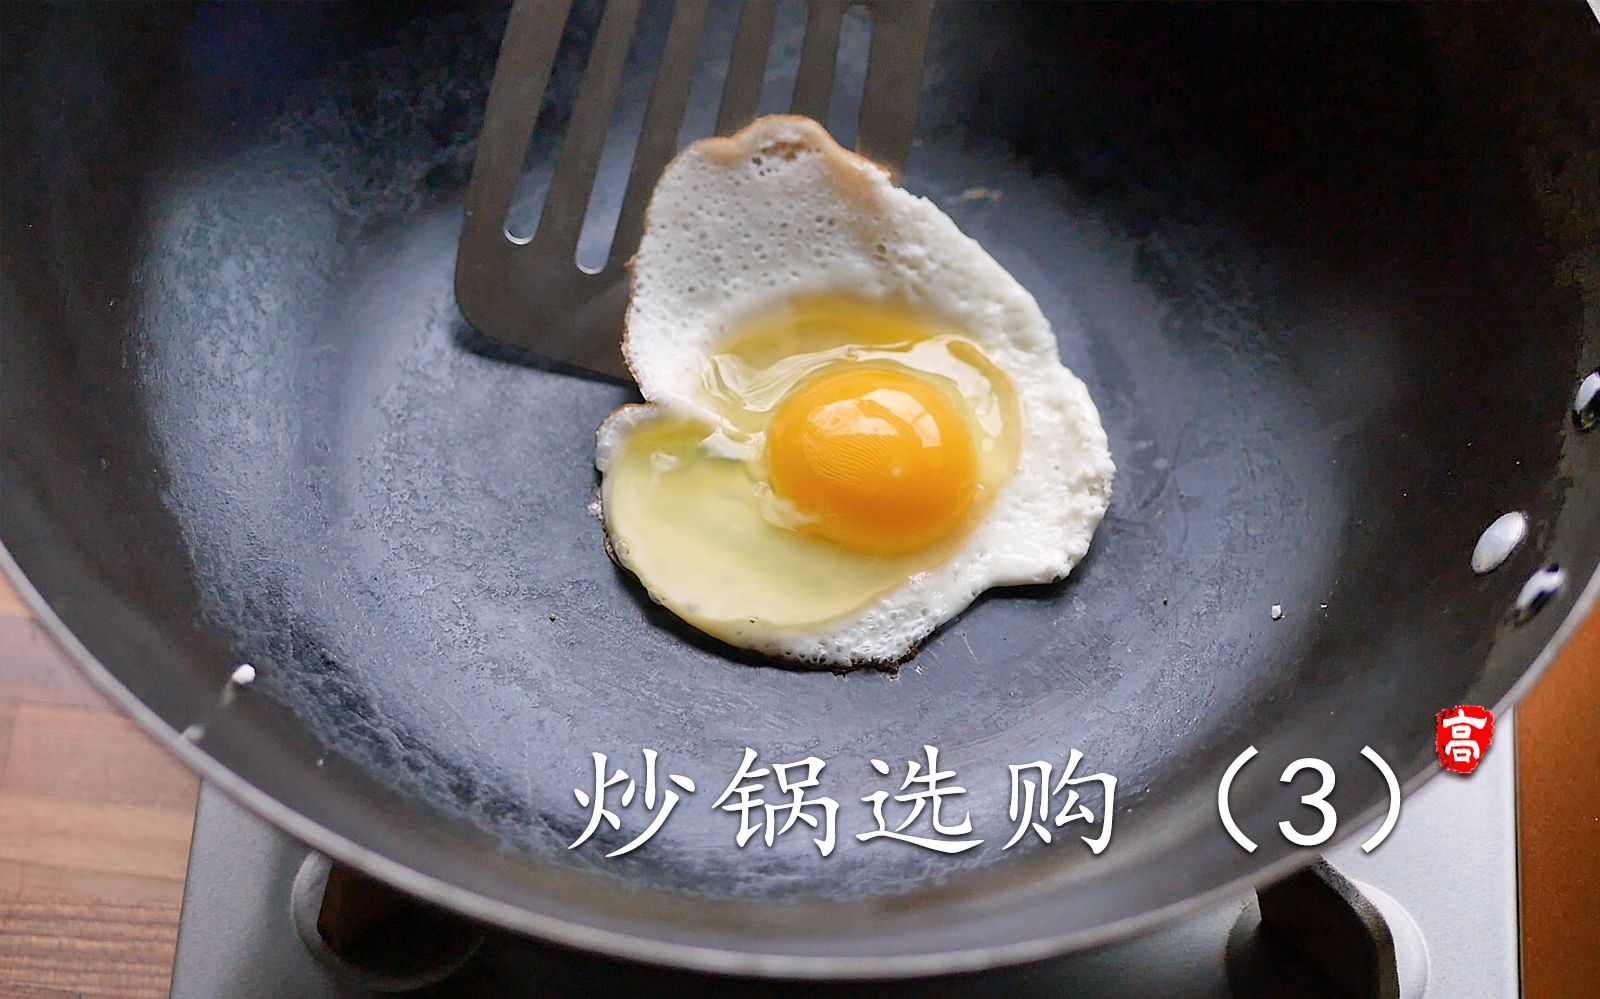 铁锅怎么煎鸡蛋不粘锅，是锅的问题吗？方法对，铁锅也能煎好鸡蛋 | 说明书网